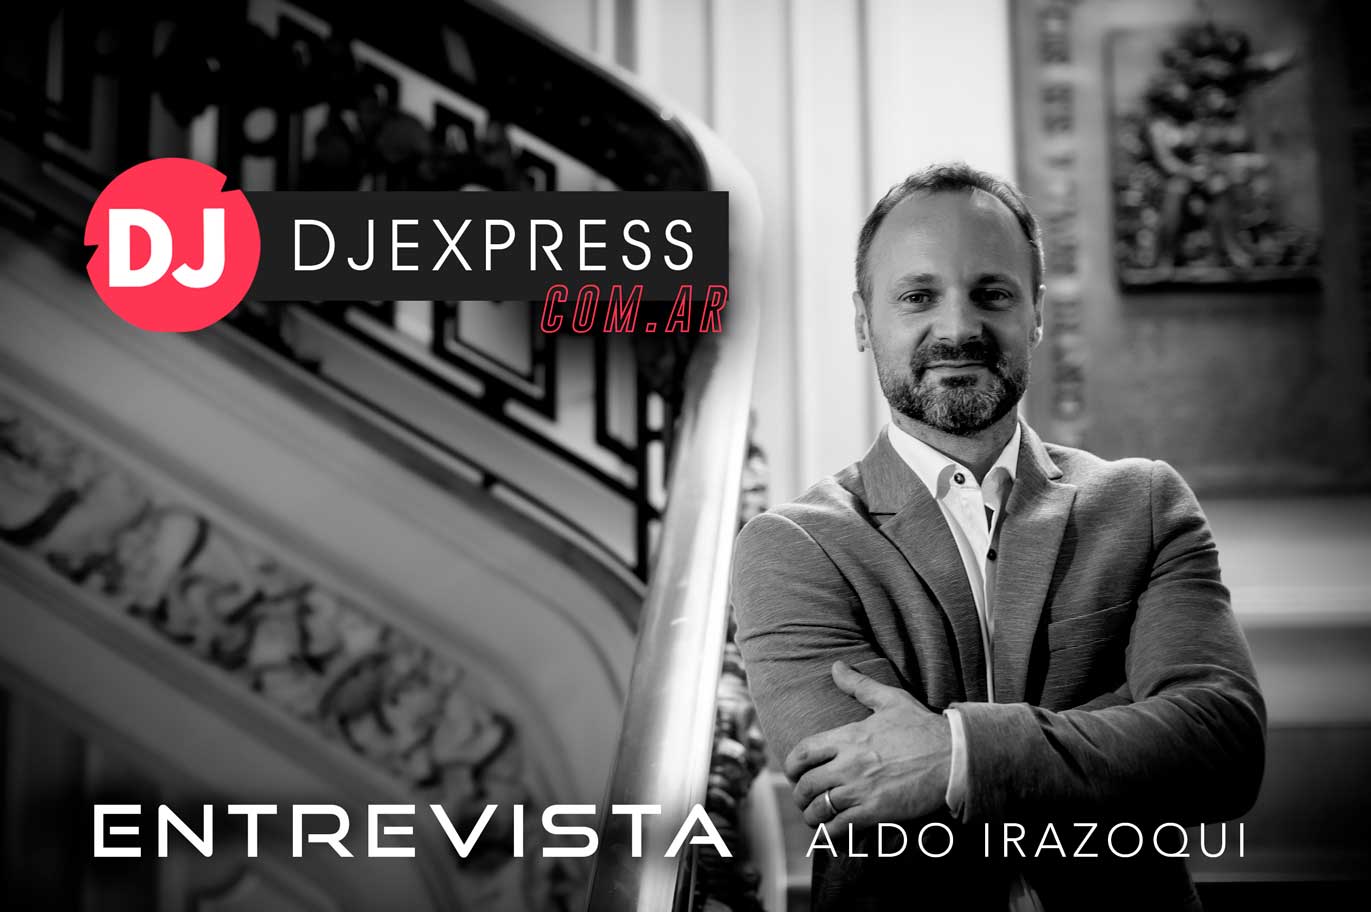 Aldo Irazoqui director HBA en foto entrevista dj express